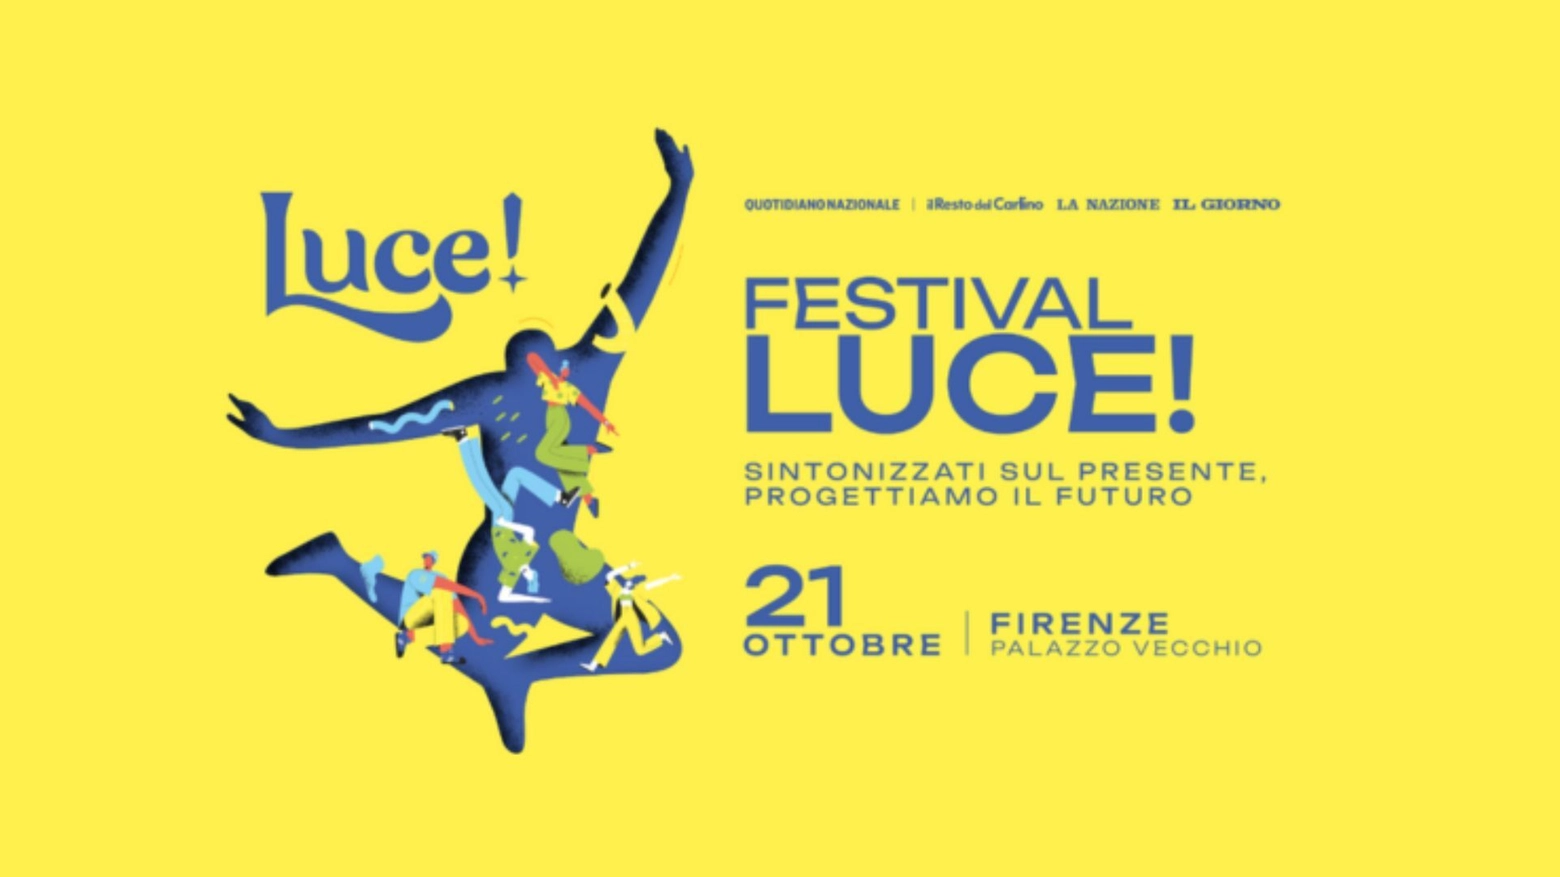 Luce! vi dà appuntamento il 21 ottobre, a Palazzo Vecchio, per una giornata di talk, dibattiti, musica con tanti ospiti e creator provenienti dal mondo dell'economia, della politica e dello spettacolo